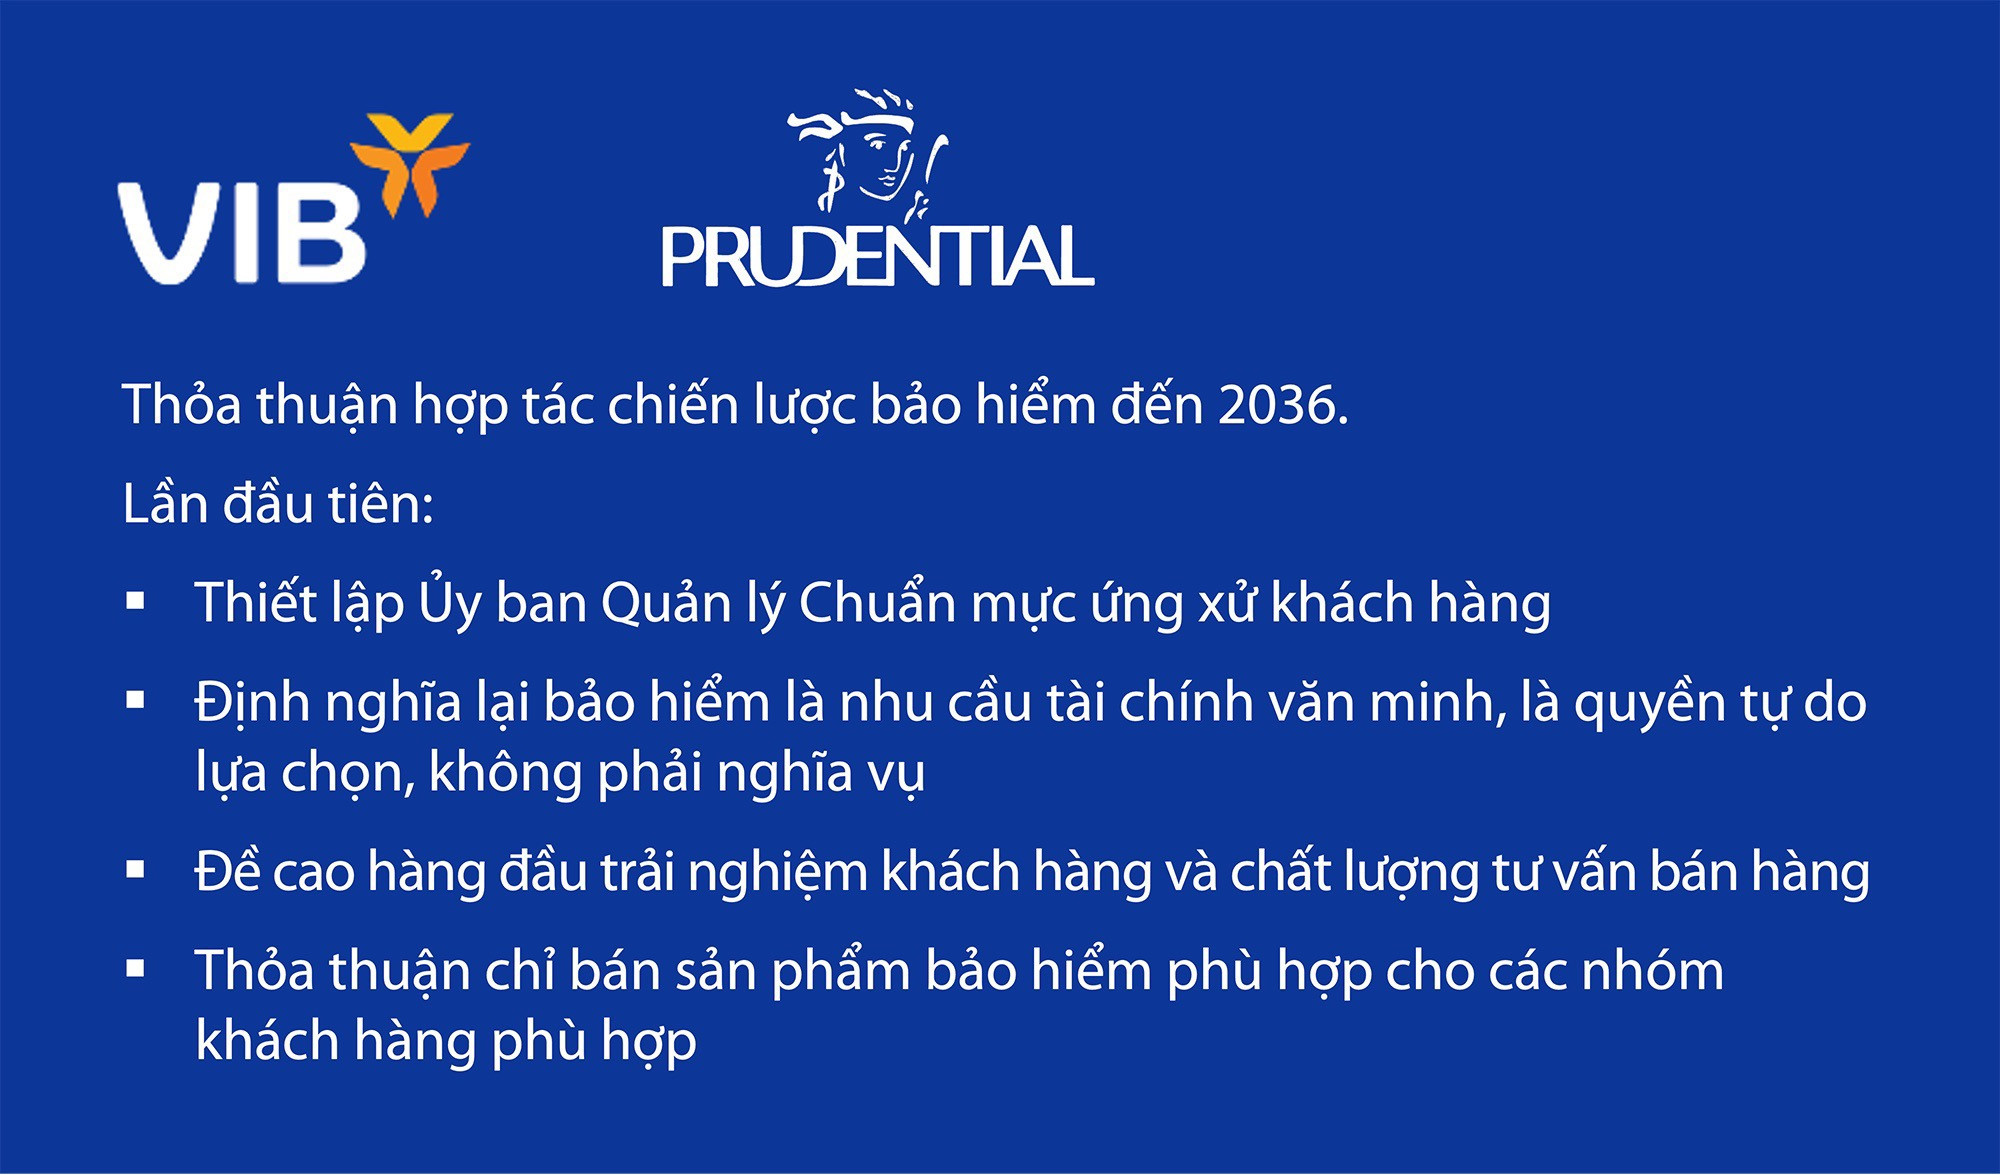 Prudential Việt Nam hợp tác VIB nâng chất lượng kênh phân phối bancassurance